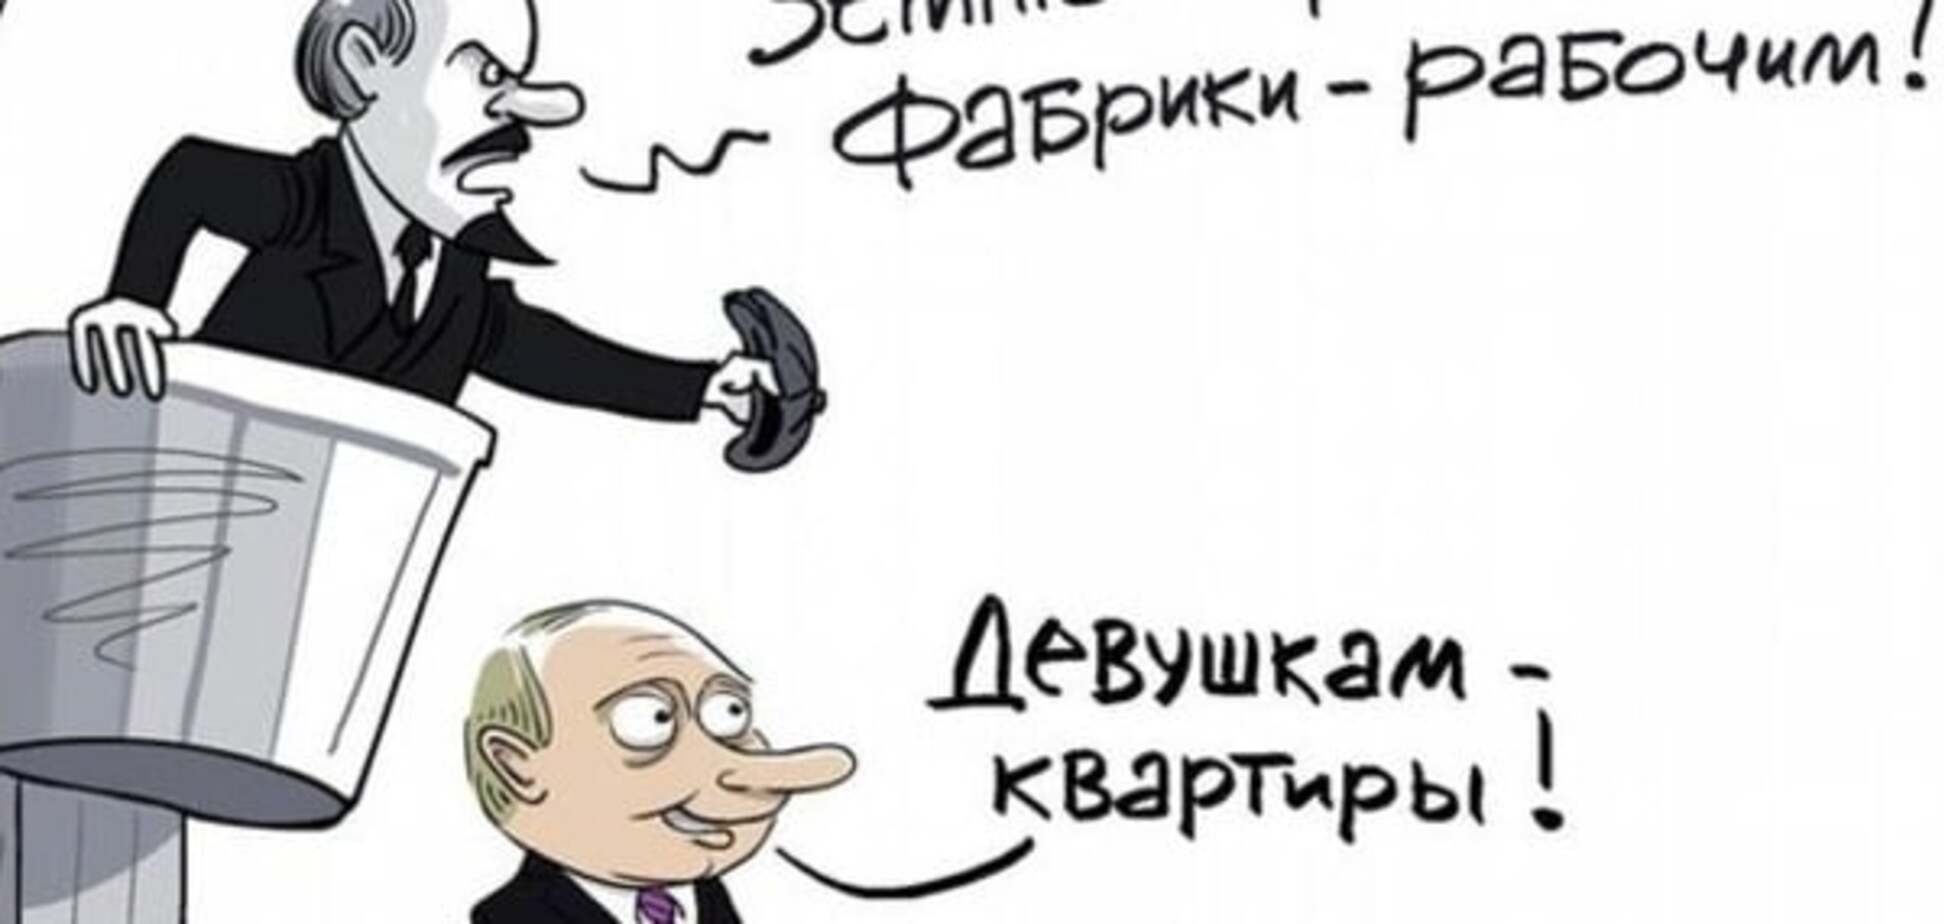 'Девушкам - квартиры': карикатурист показал, как Путин переплюнул Ленина